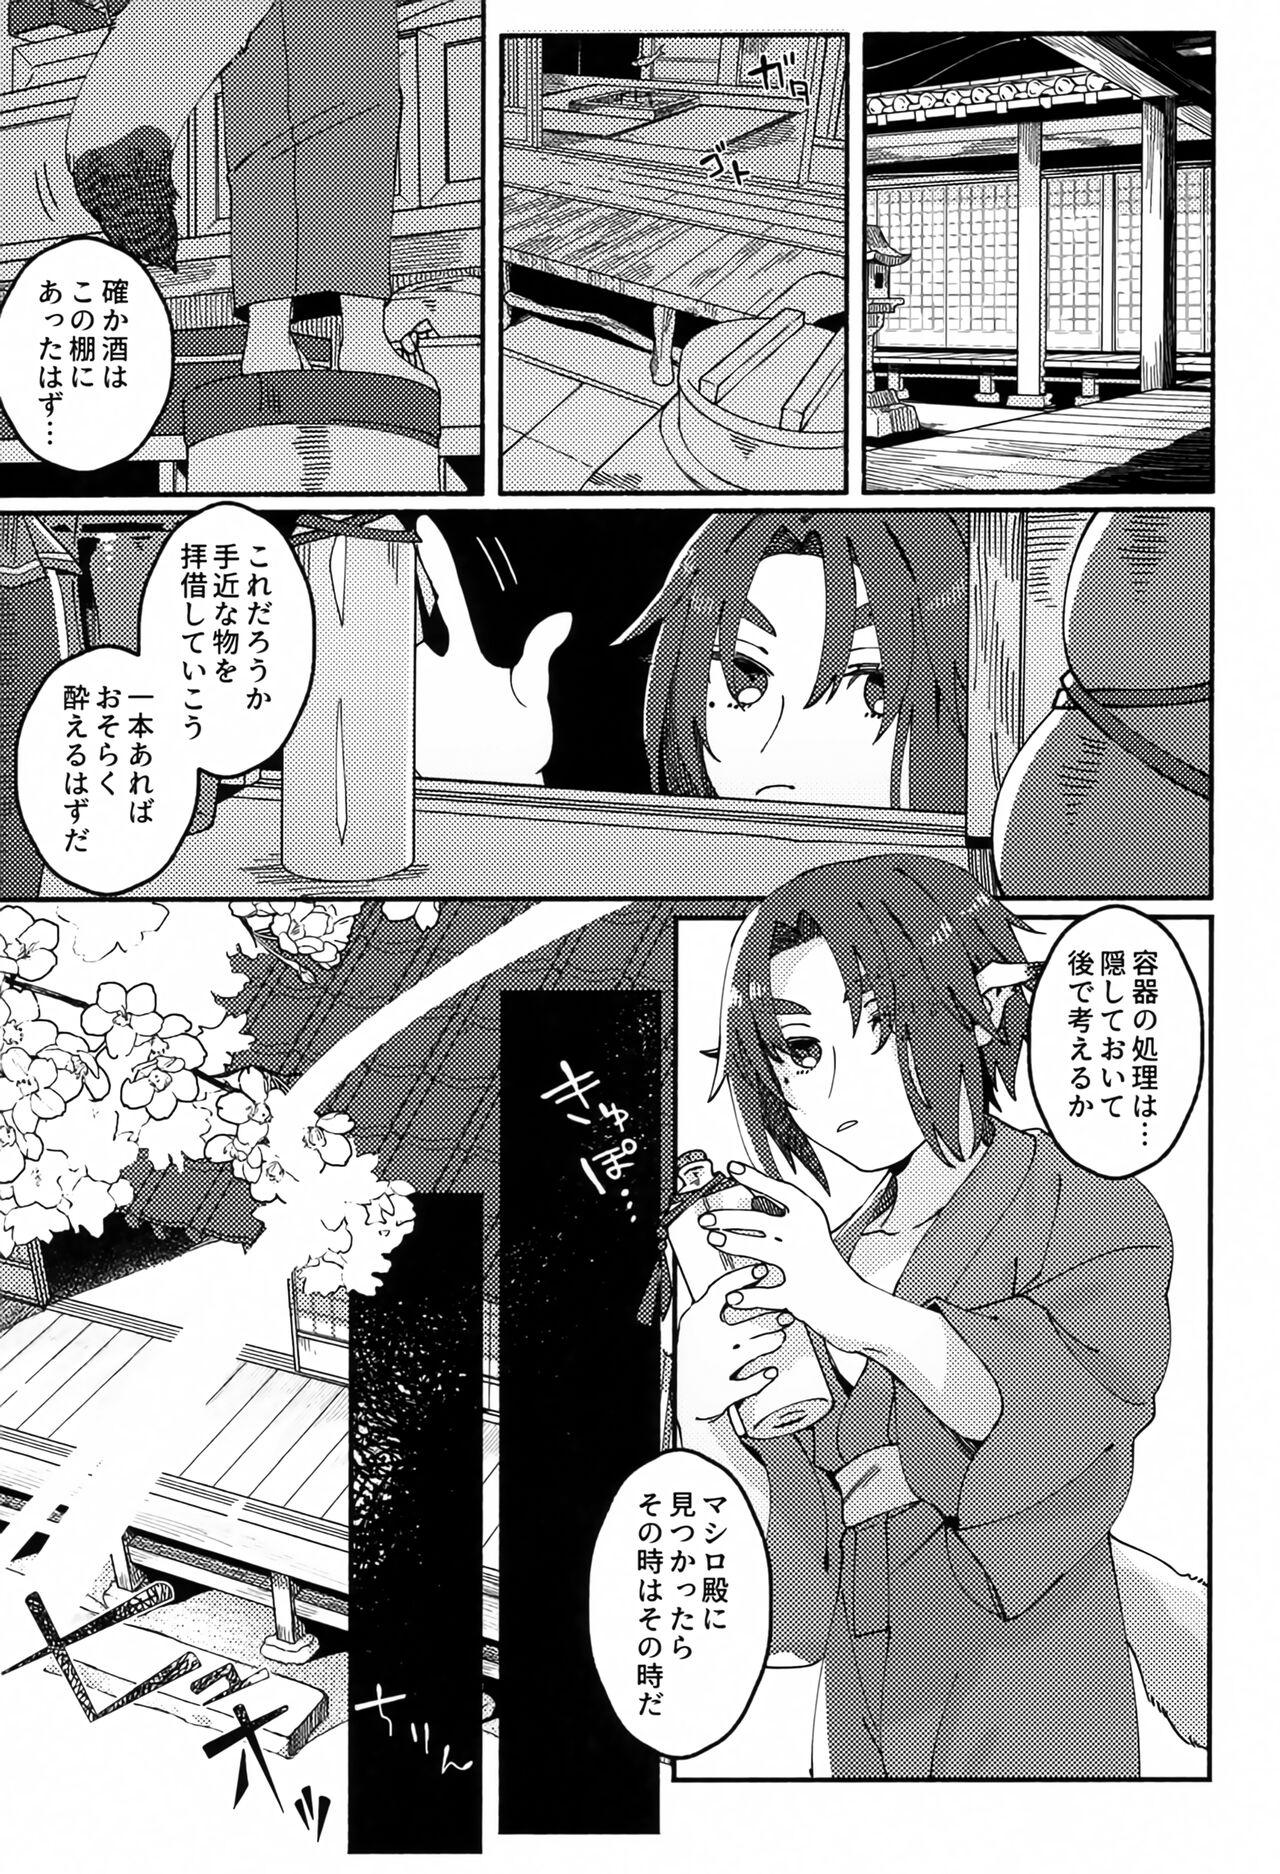 Natural Kodomo no Te no Todokanai Basho e Hokan Shite Kudasai - Utawarerumono Solo Female - Page 8